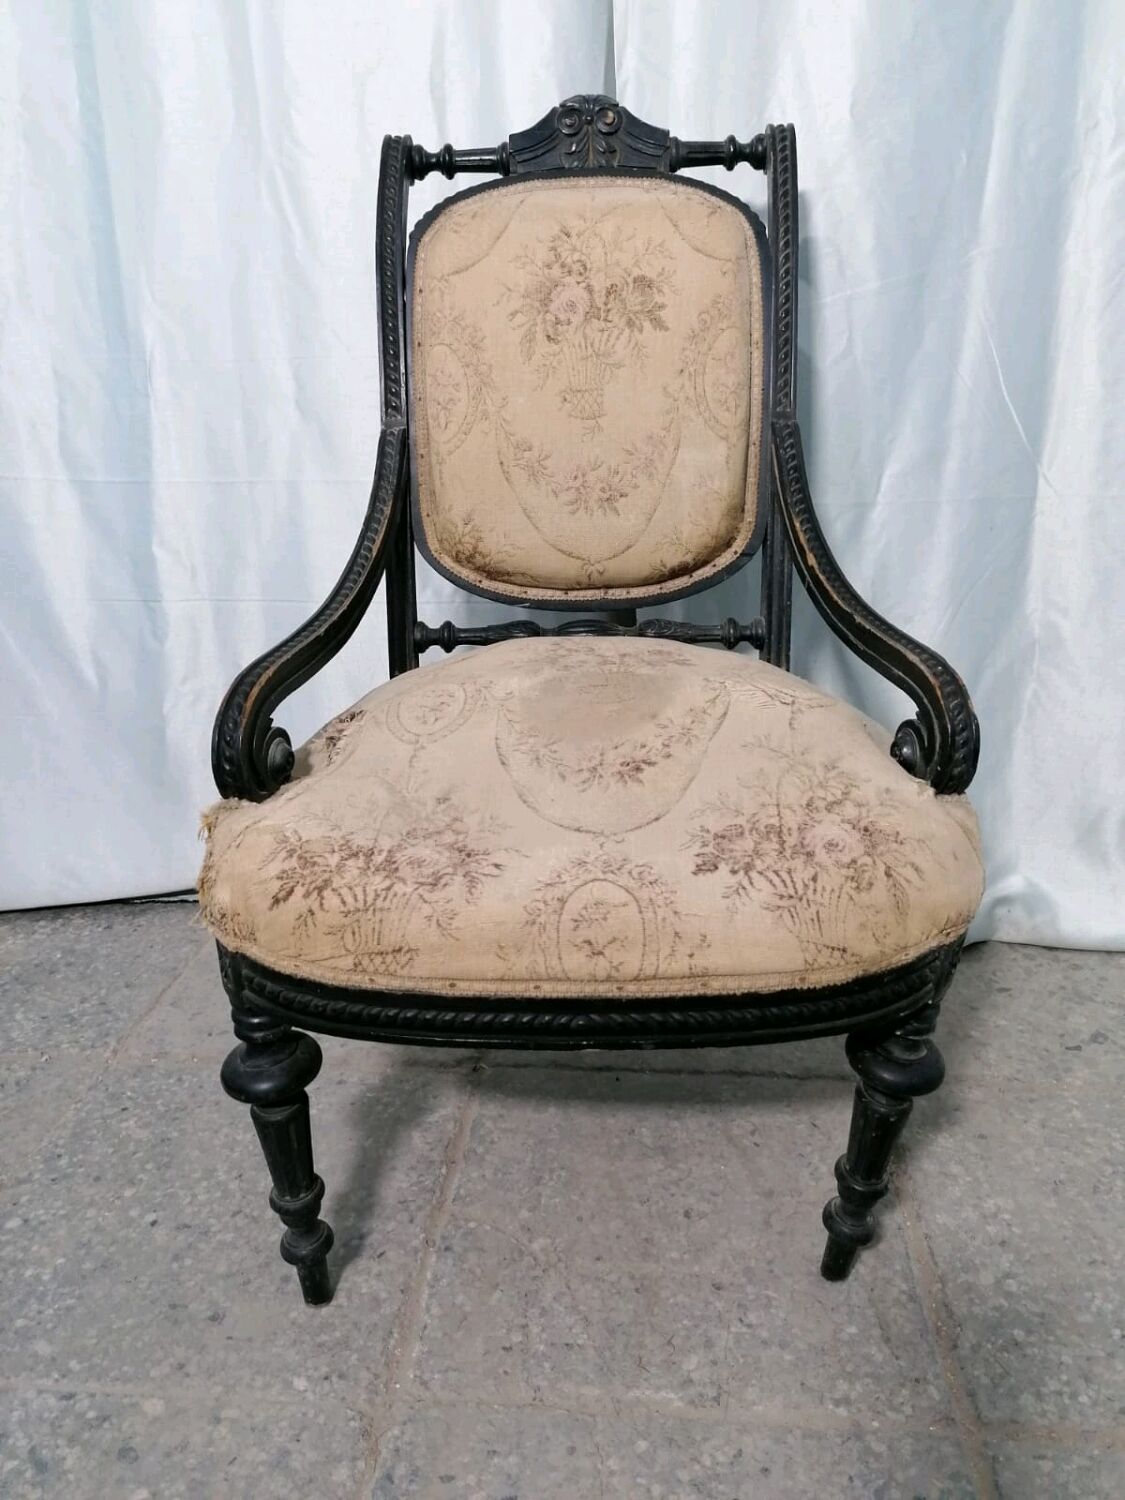 Старое кресло